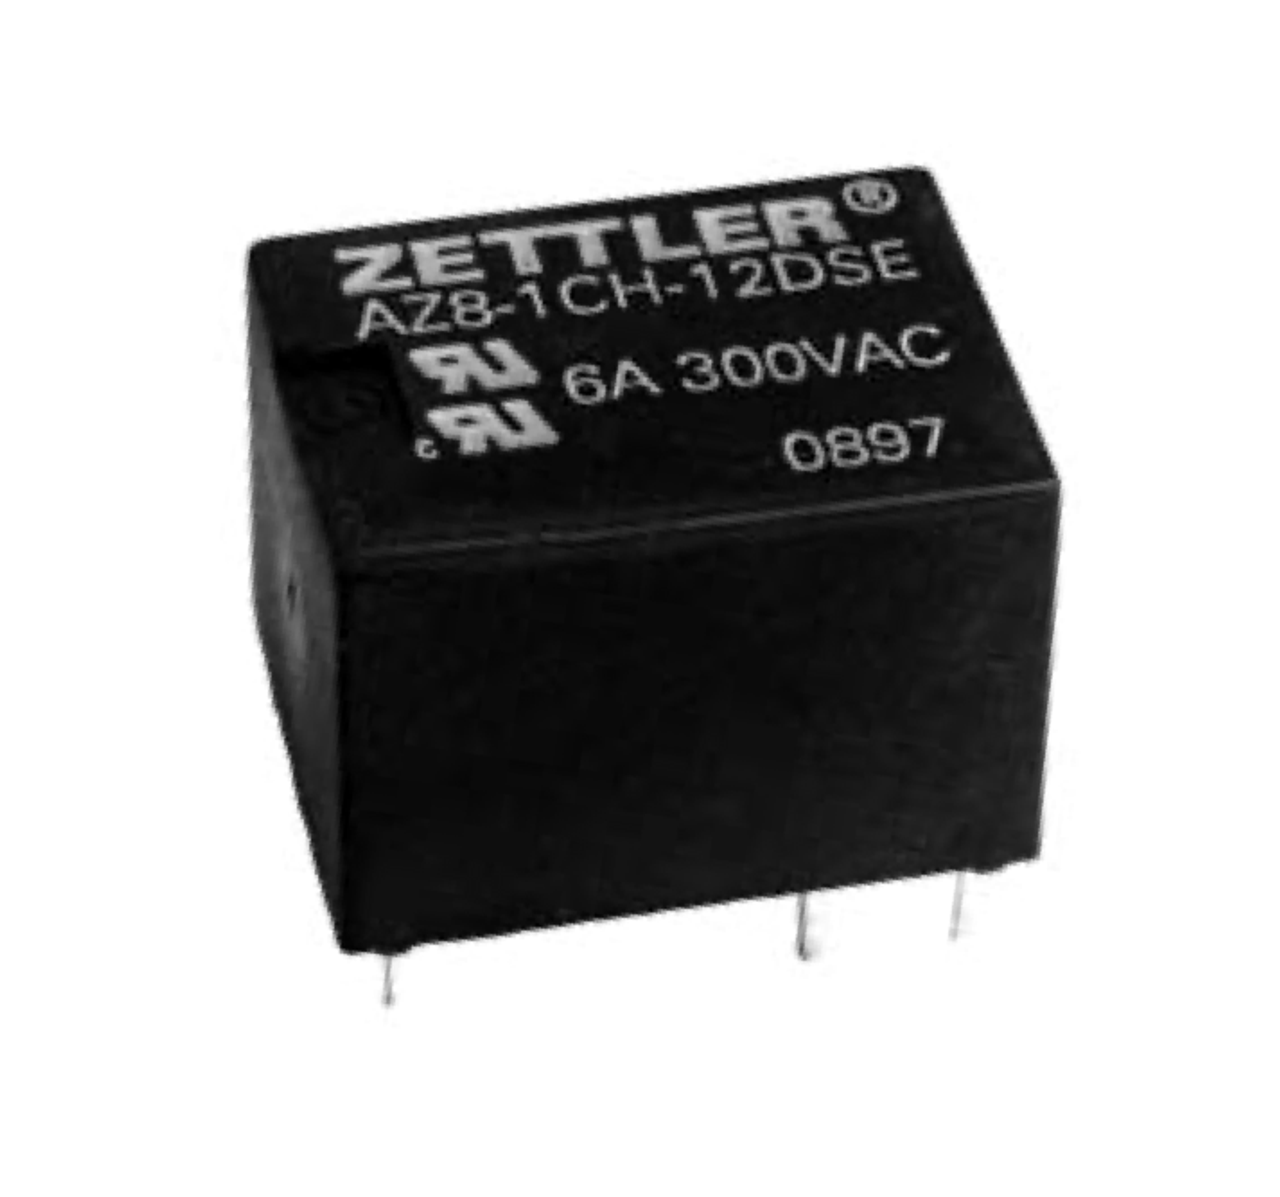 American Zettler AZ8-1CH-48DE Power Relay